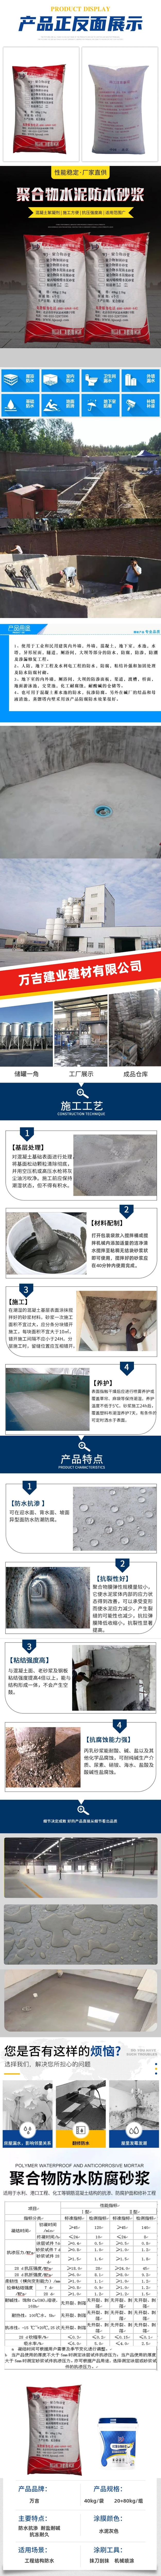 宣威市地下室外墙防水用聚合物水泥防水砂浆